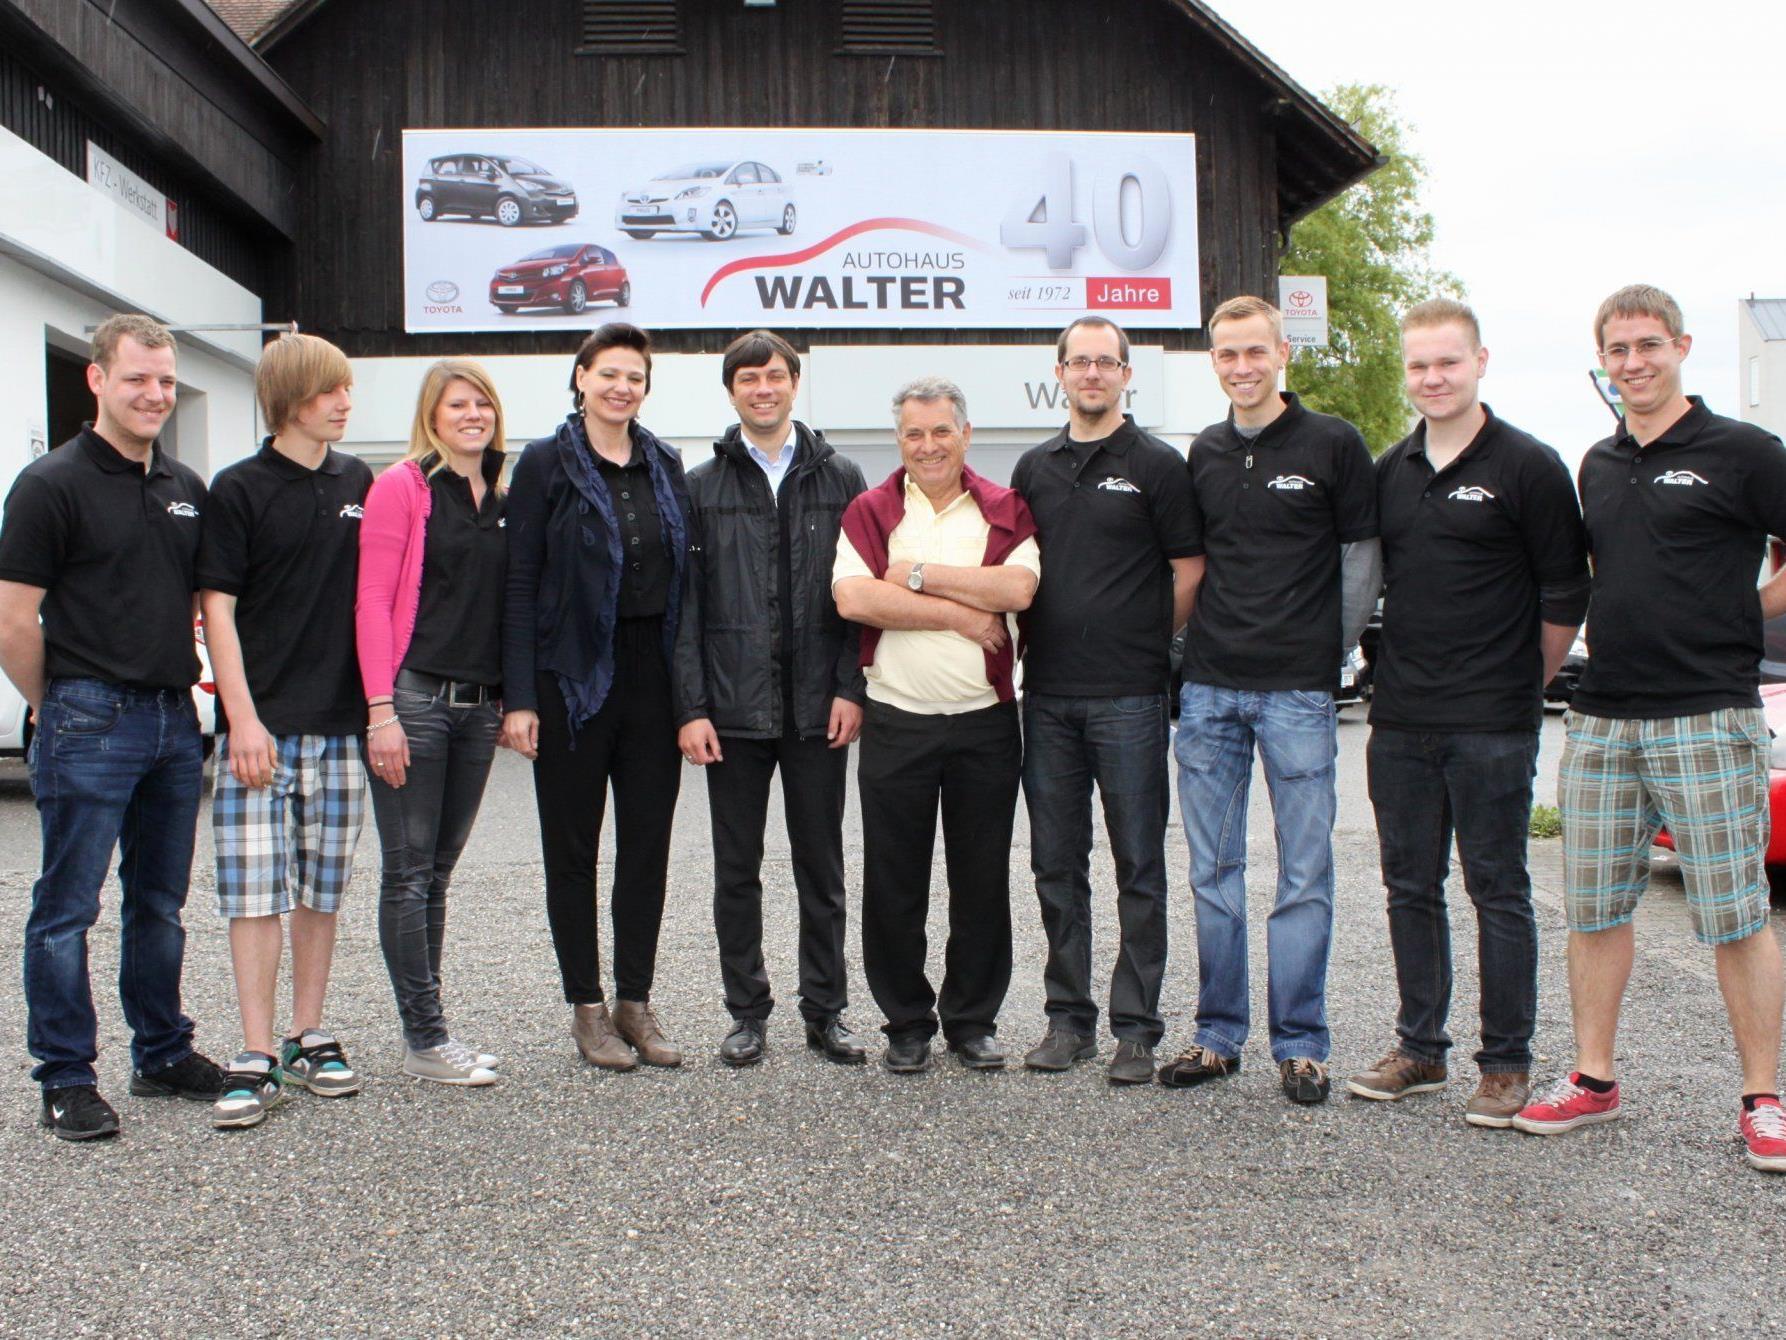 Das erfolgreiche „Toyota Walter“-Team feierte zusammen mit vielen Gästen dieses Jubiläum.